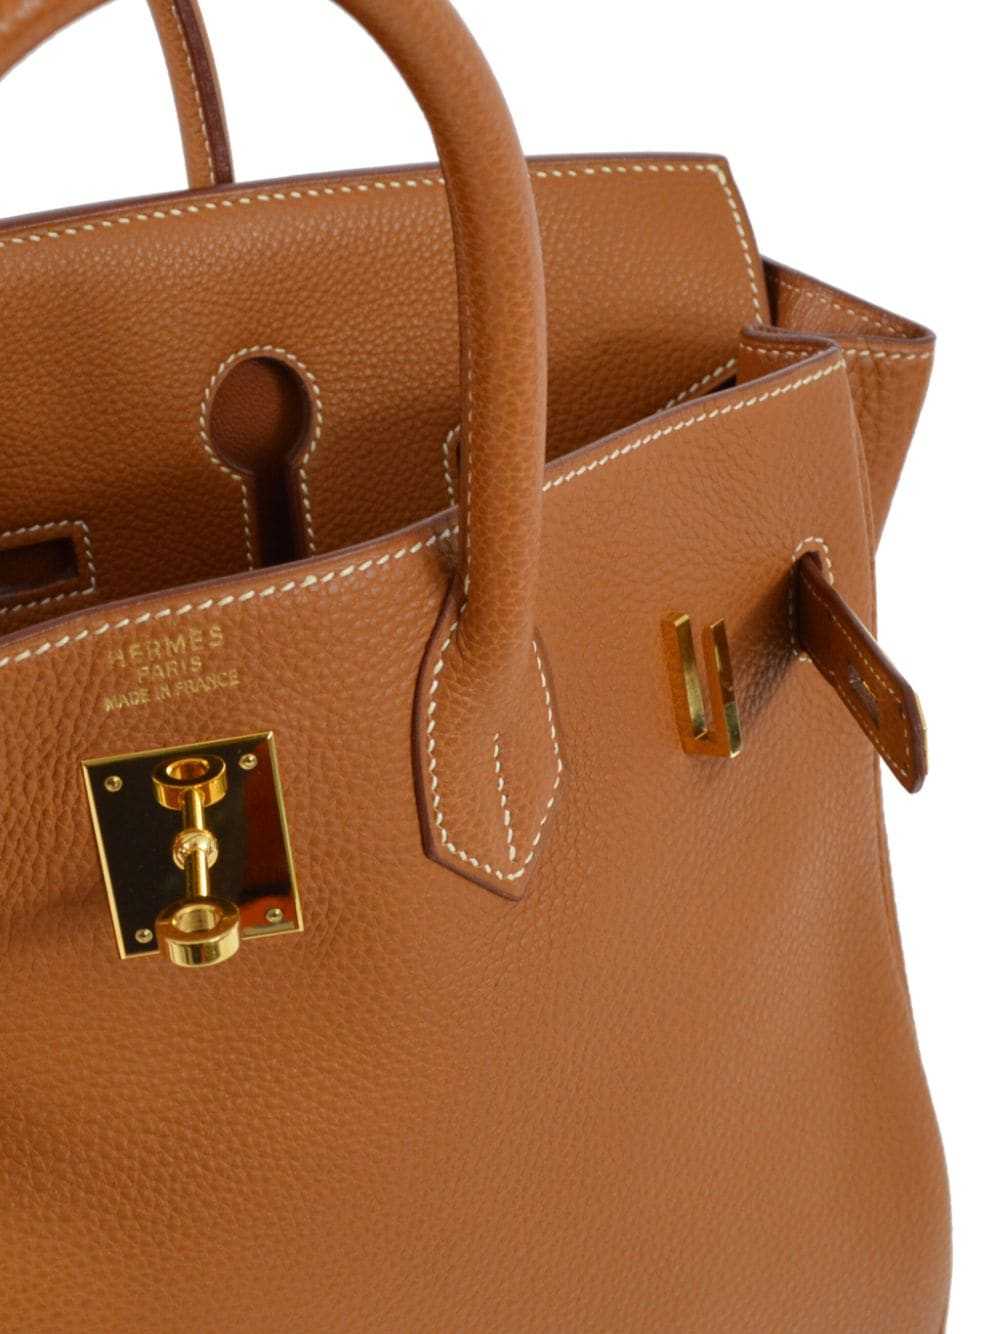 Hermès Pre-Owned 2001 Birkin 32 handbag - Brown - image 4